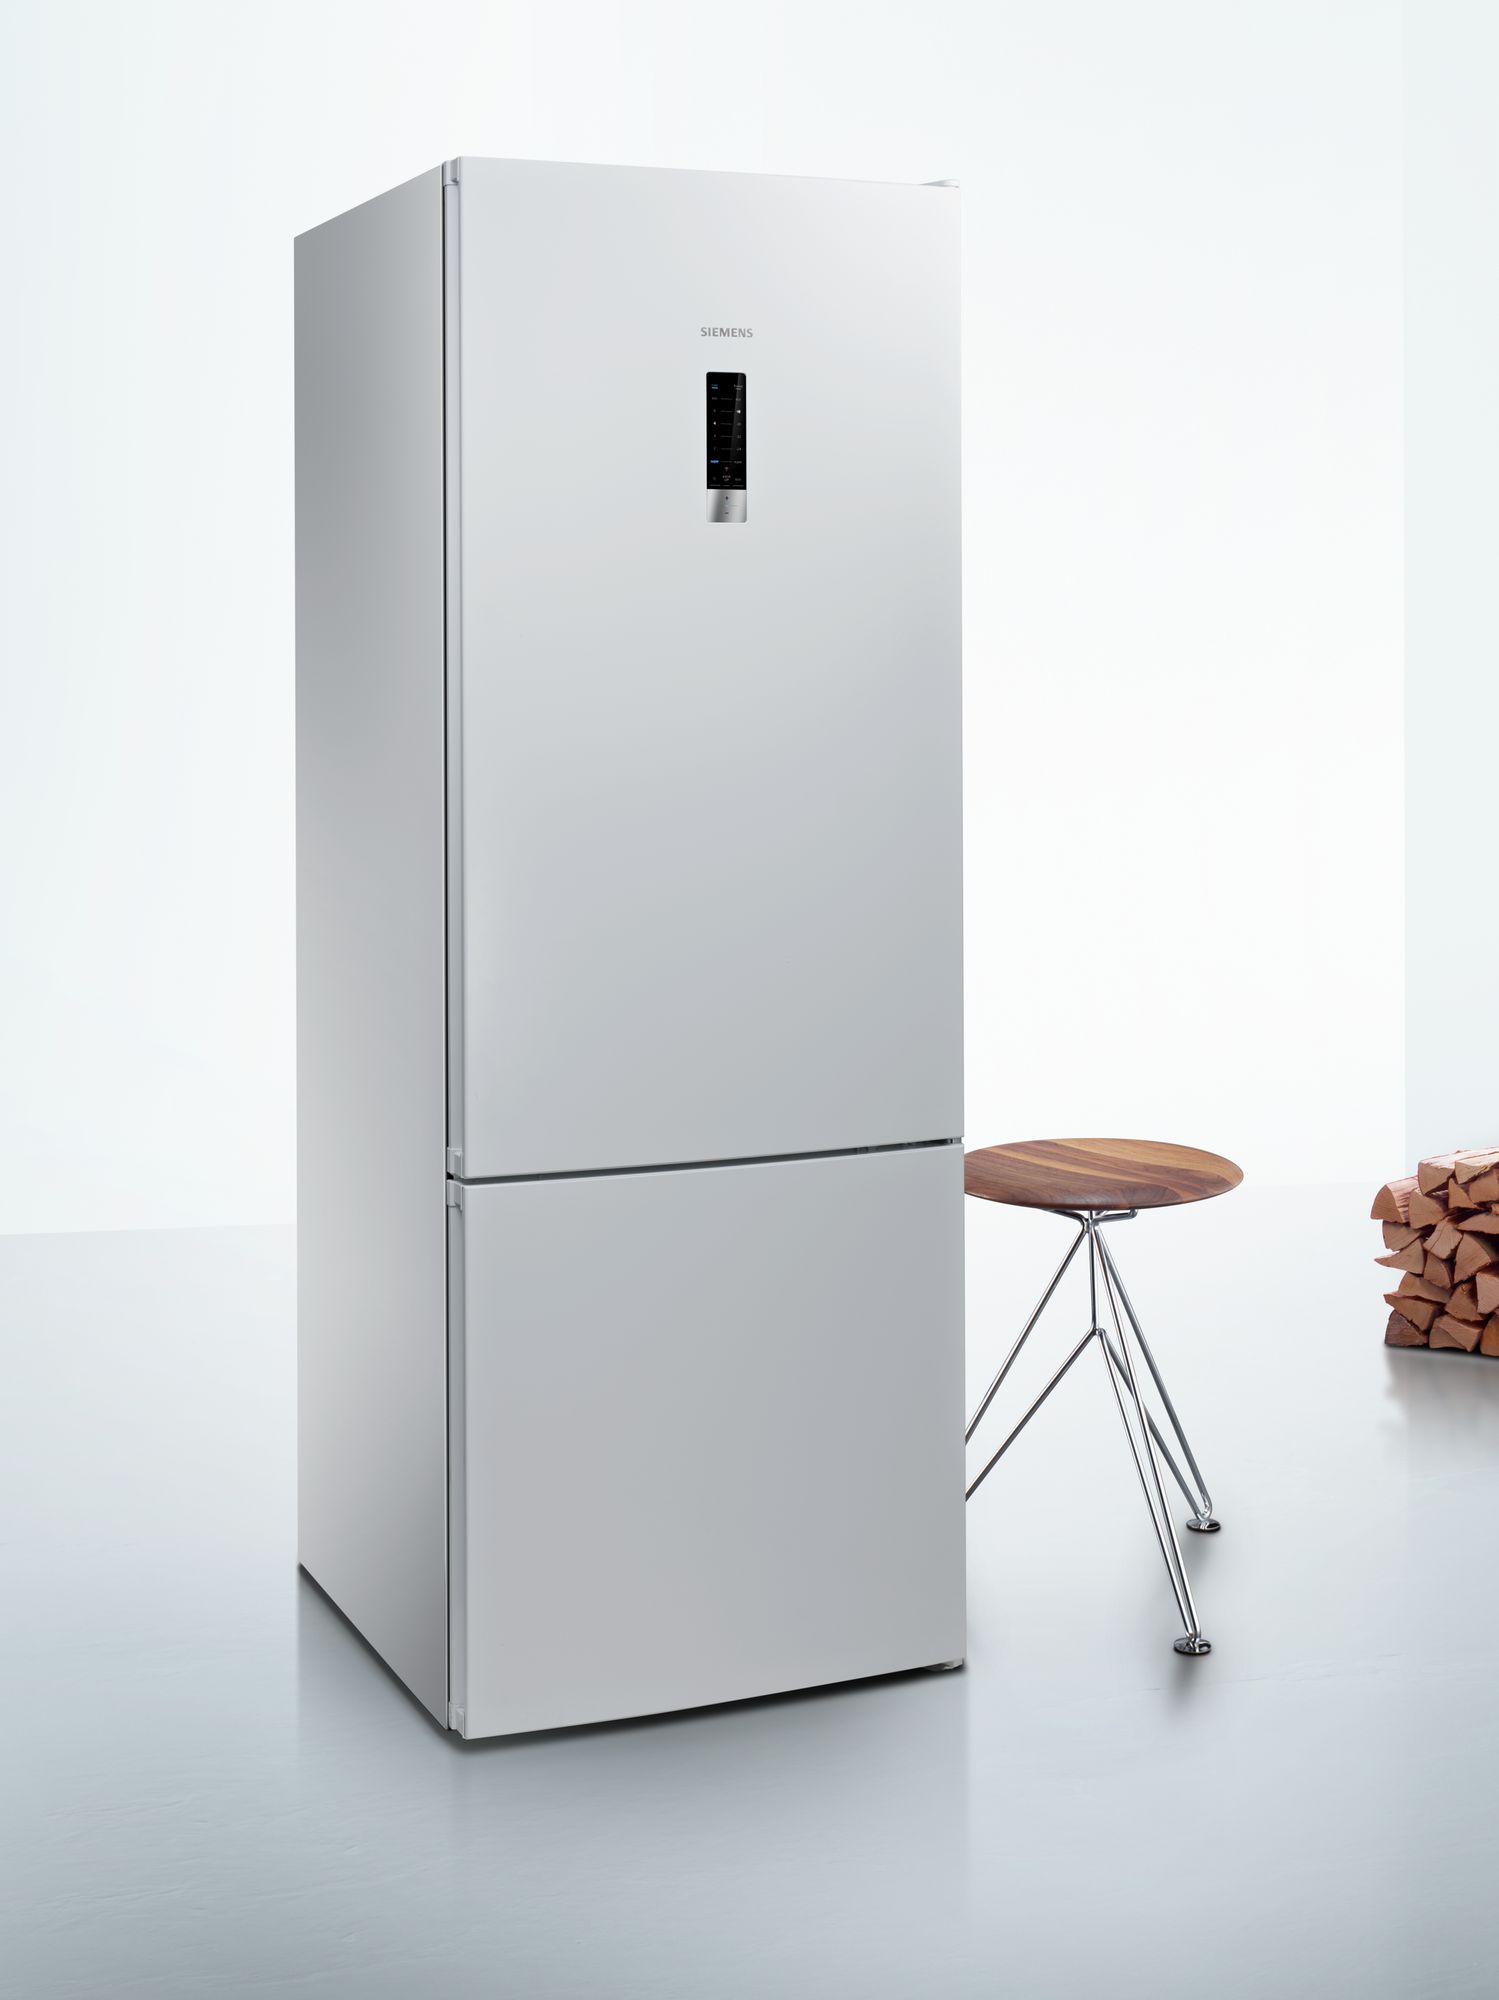 iQ300 Alttan Donduruculu Buzdolabı Beyaz, 70 cm